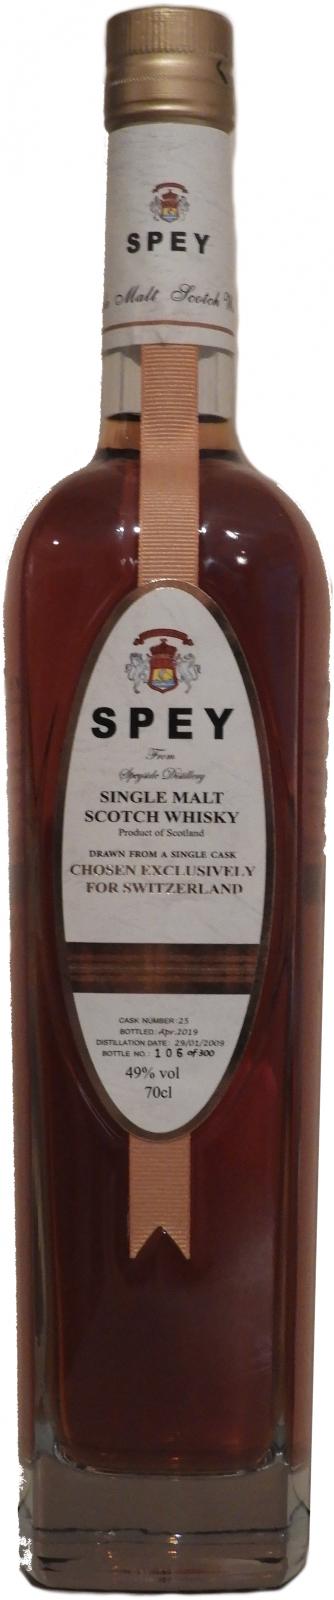 SPEY 2009 #25 Chosen exclusively for Switzerland 49% 700ml